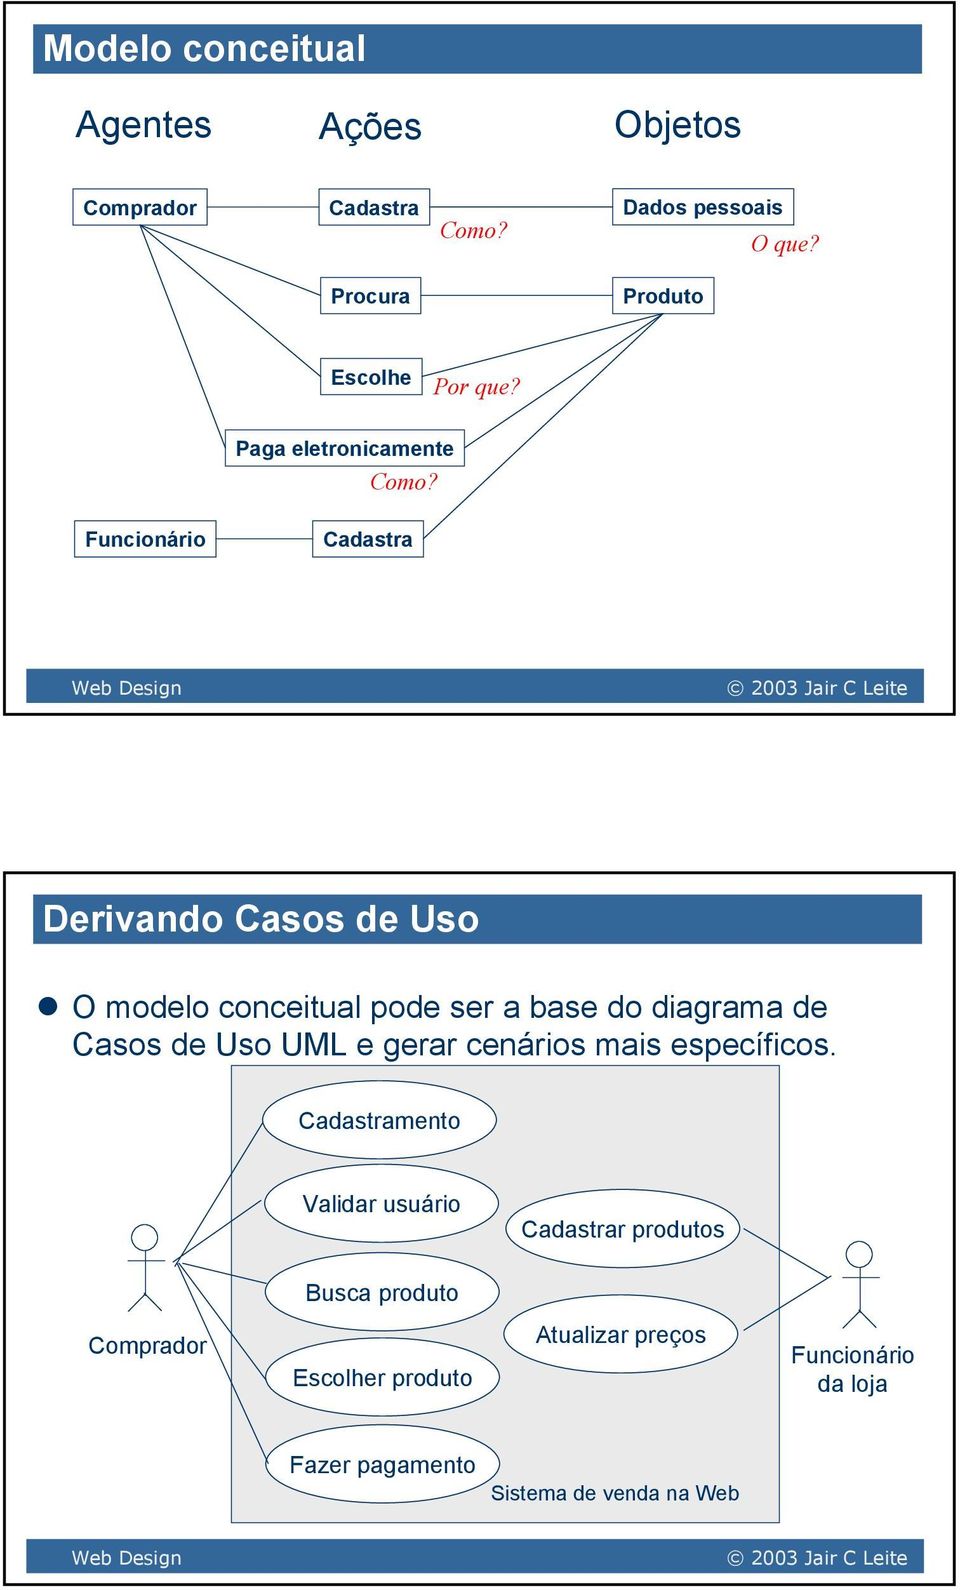 Funcionário Cadastra Derivando Casos de Uso O modelo conceitual pode ser a base do diagrama de Casos de Uso UML e